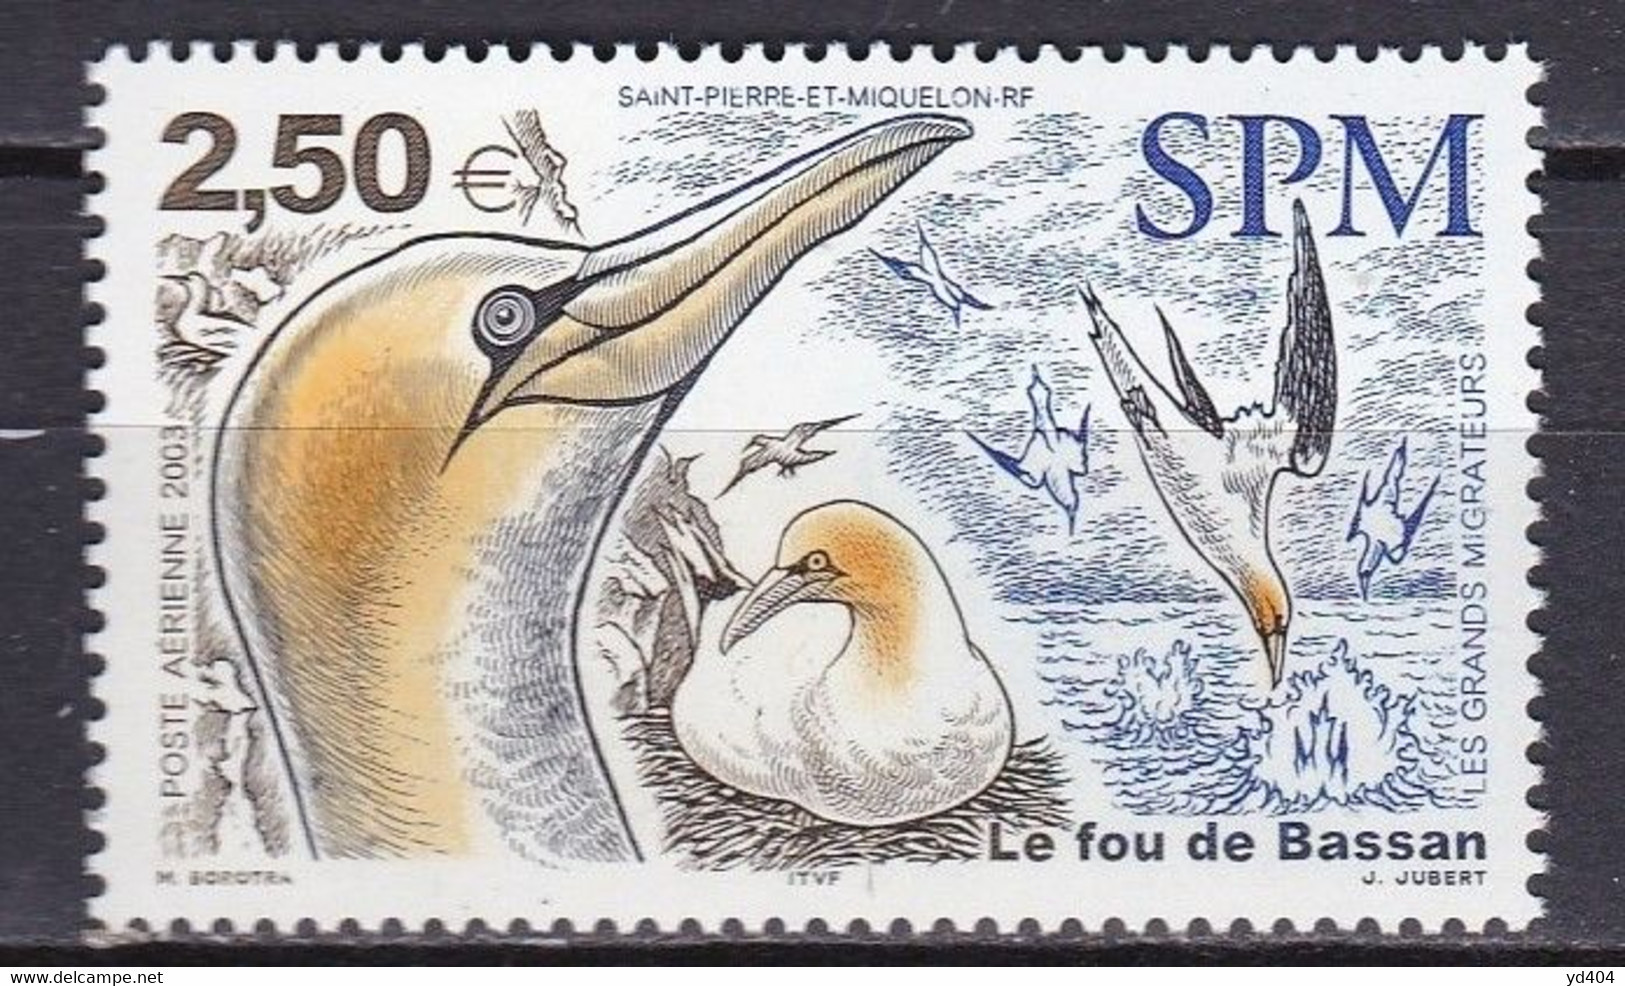 PM-426 – ST PIERRE & MIQUELON – AIRMAIL - 2003 – MIGRATORY BIRDS – Y&T # 83 MNH 10 € - Nuevos